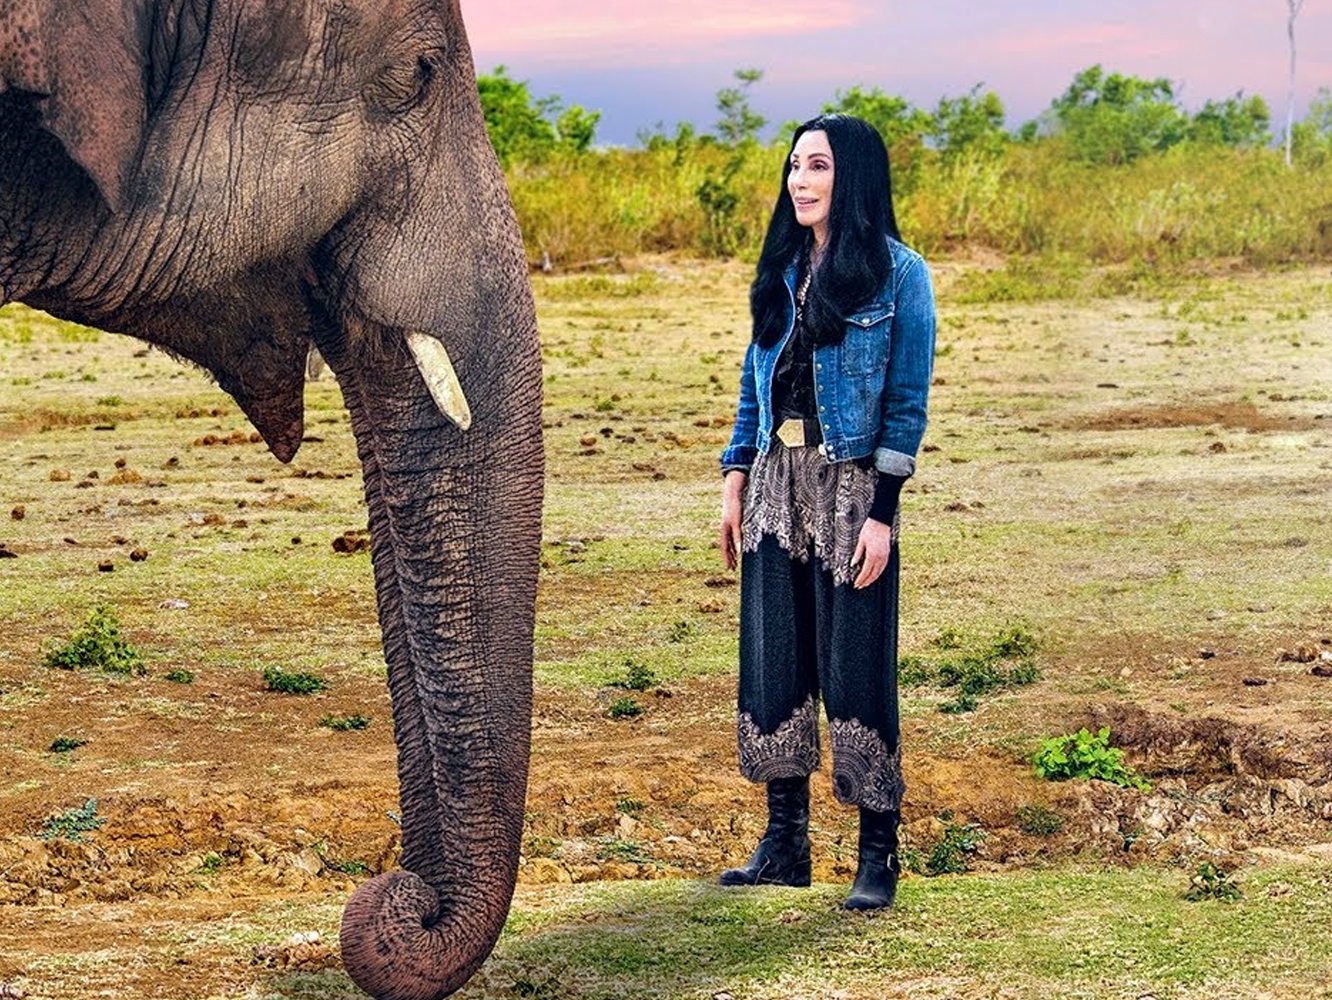  Cher lanza ‘Walls’, el single que acompaña a su documental sobre un elefante